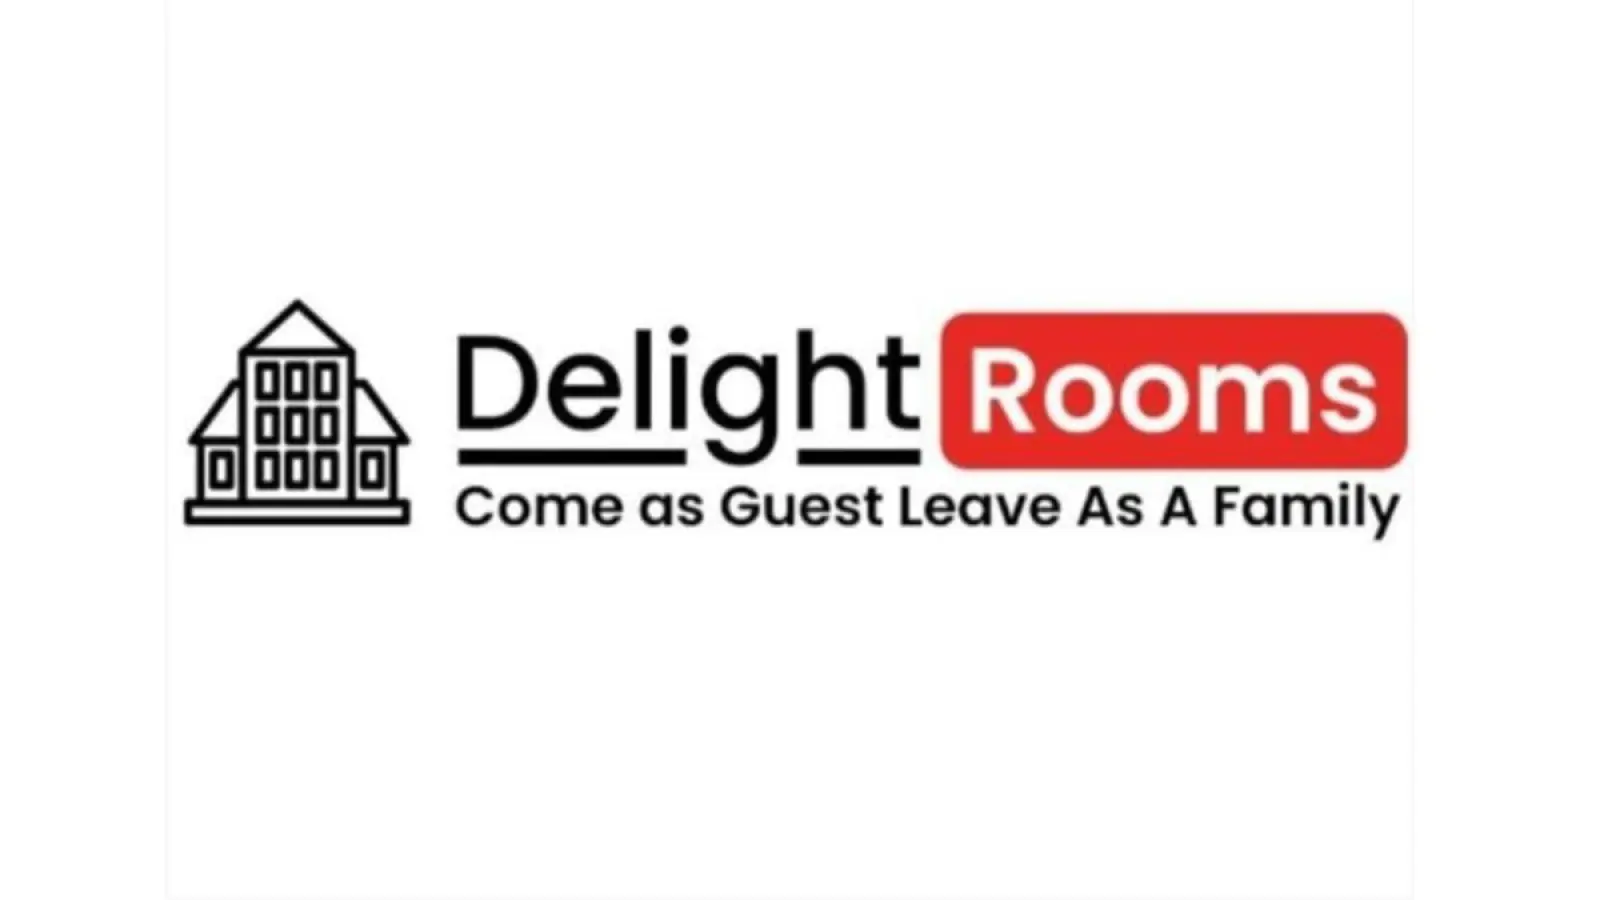 डिलाइट रूम में आराम का आनंद लें - साल्टलेक, कोलकाता में आपका सबसे अच्छा प्रवास